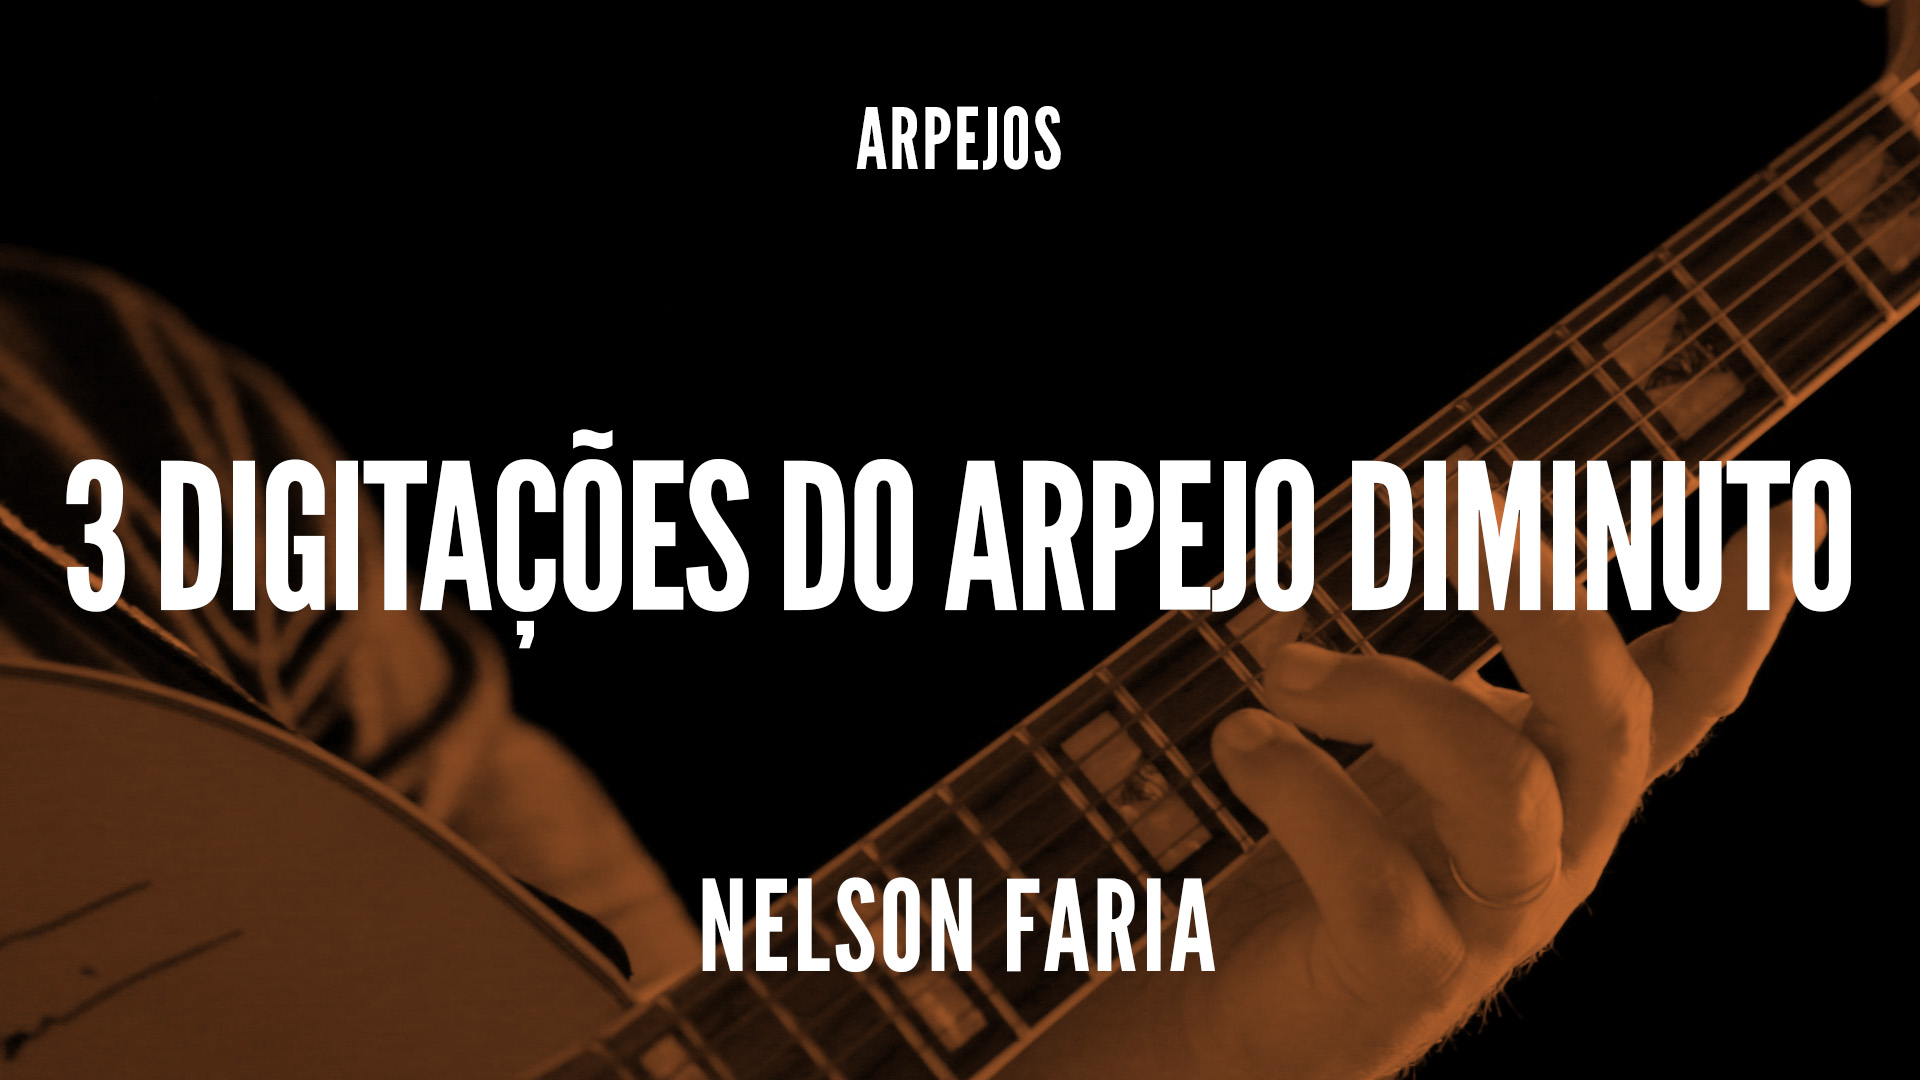 Nelson Faria segura sua guitarra - título "3 digitações do arpejo diminuto"